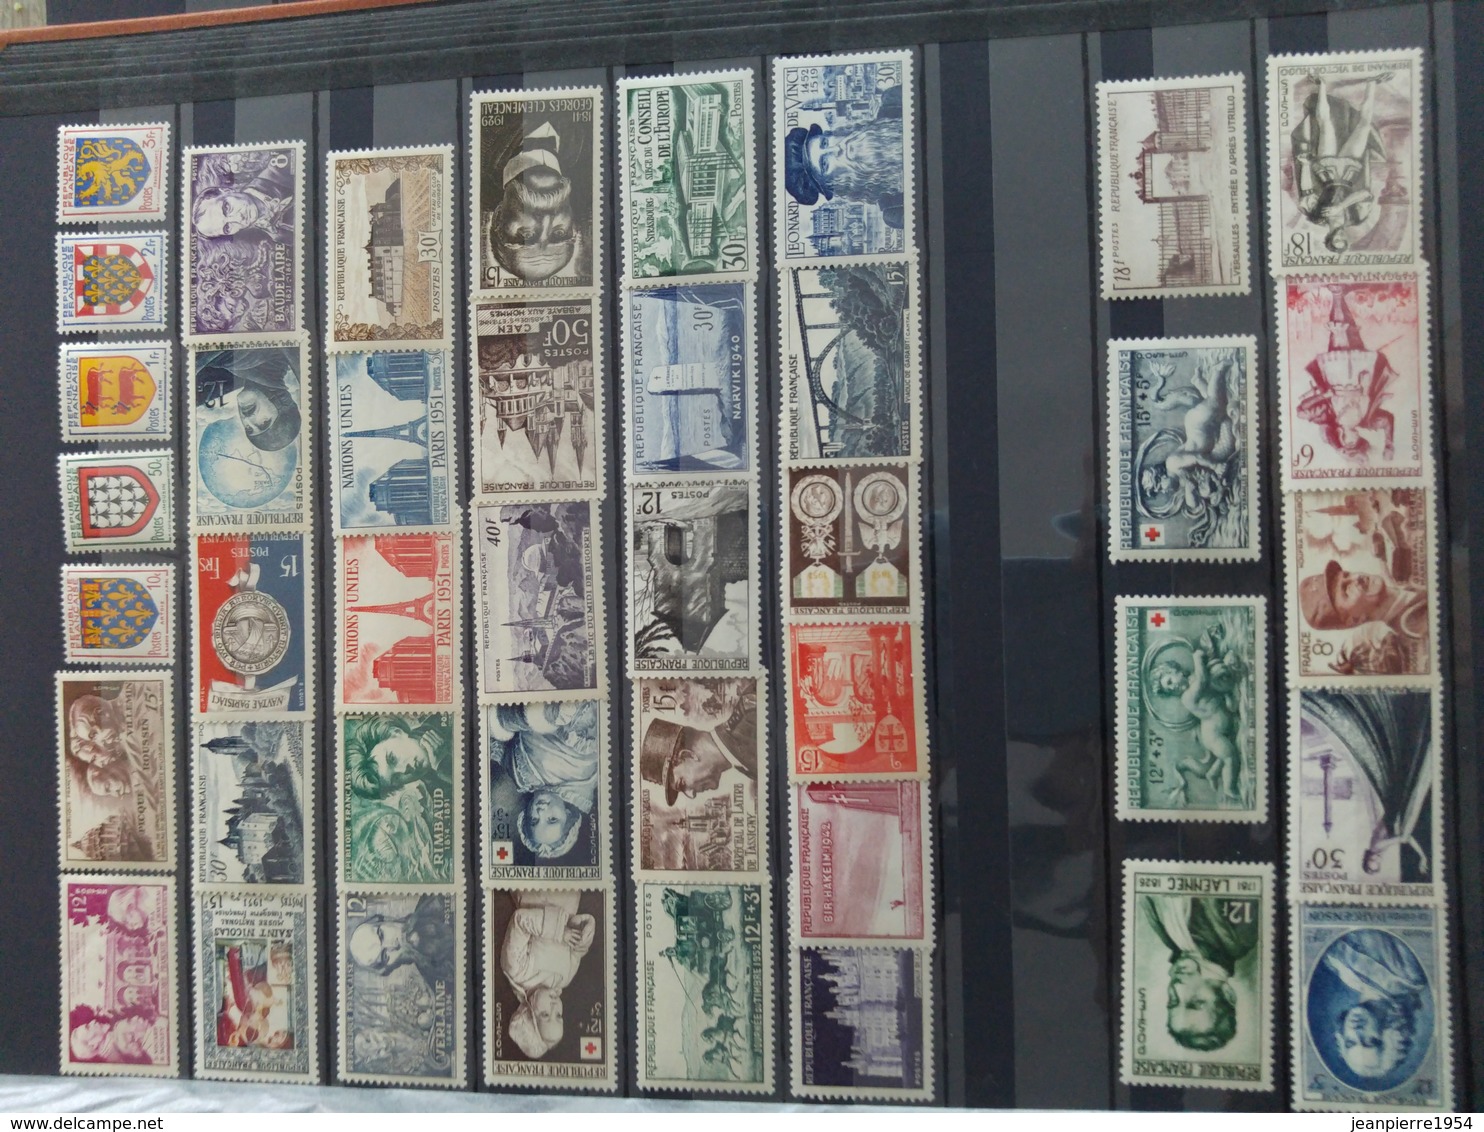 album timbres français neuf obliteres grosse cote